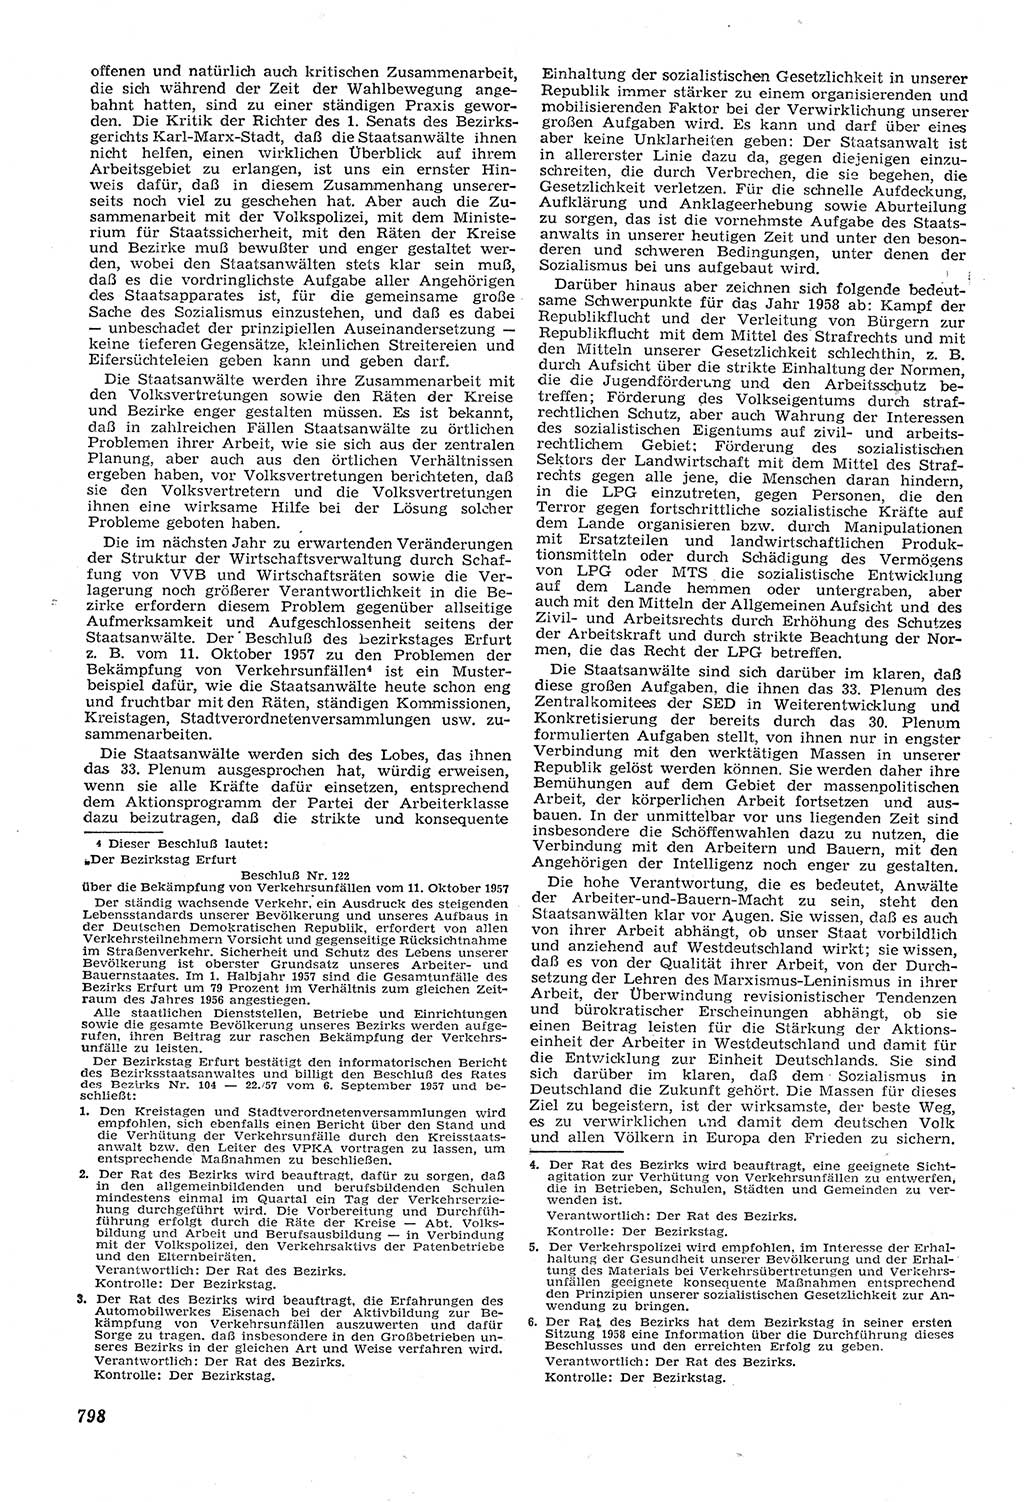 Neue Justiz (NJ), Zeitschrift für Recht und Rechtswissenschaft [Deutsche Demokratische Republik (DDR)], 11. Jahrgang 1957, Seite 798 (NJ DDR 1957, S. 798)